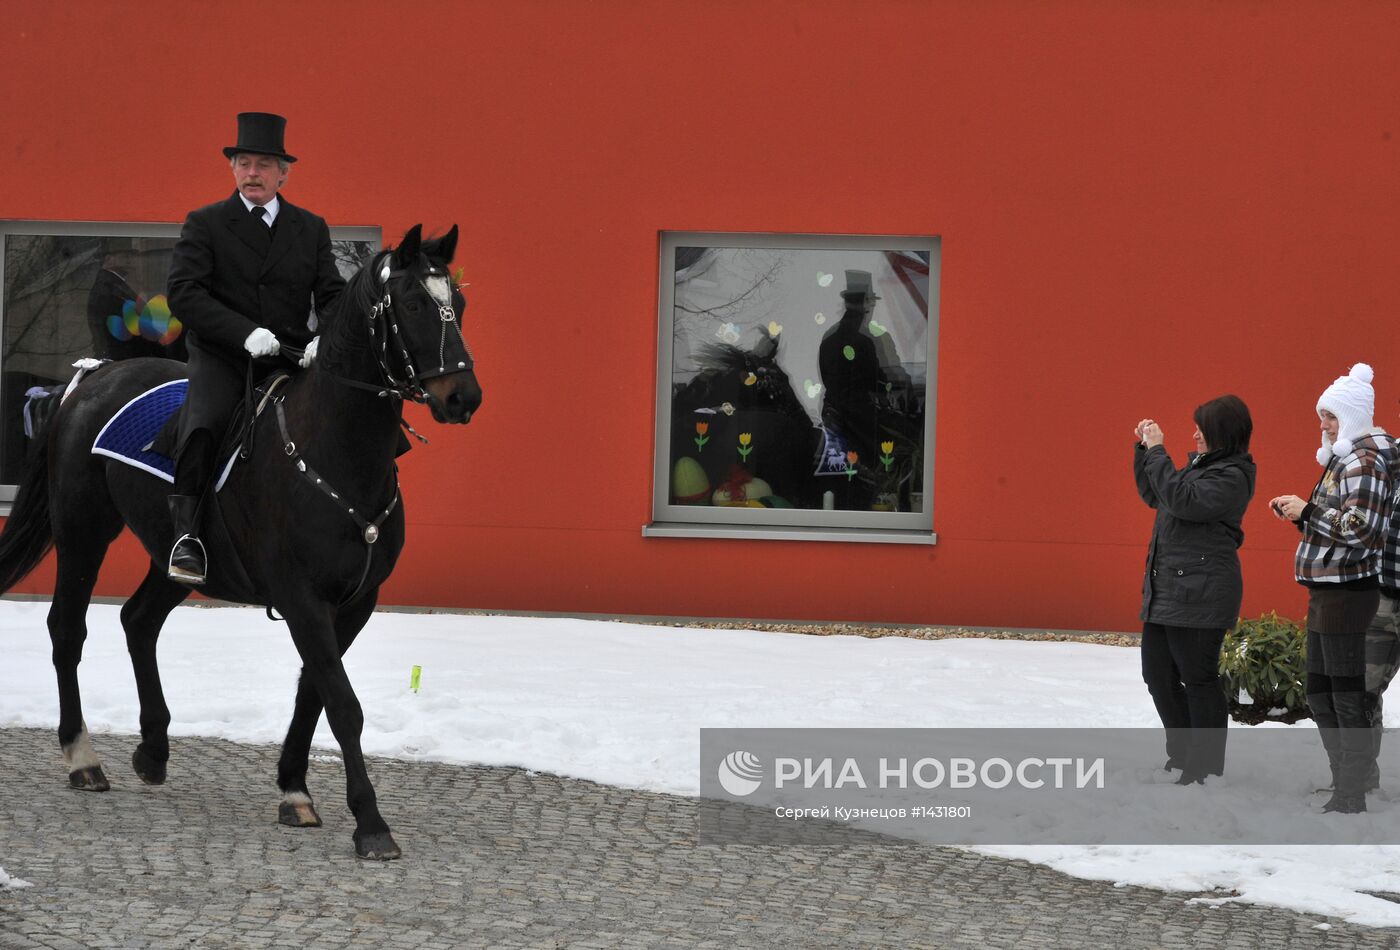 Пасхальное конное шествие по улицам Радибора в Саксонии